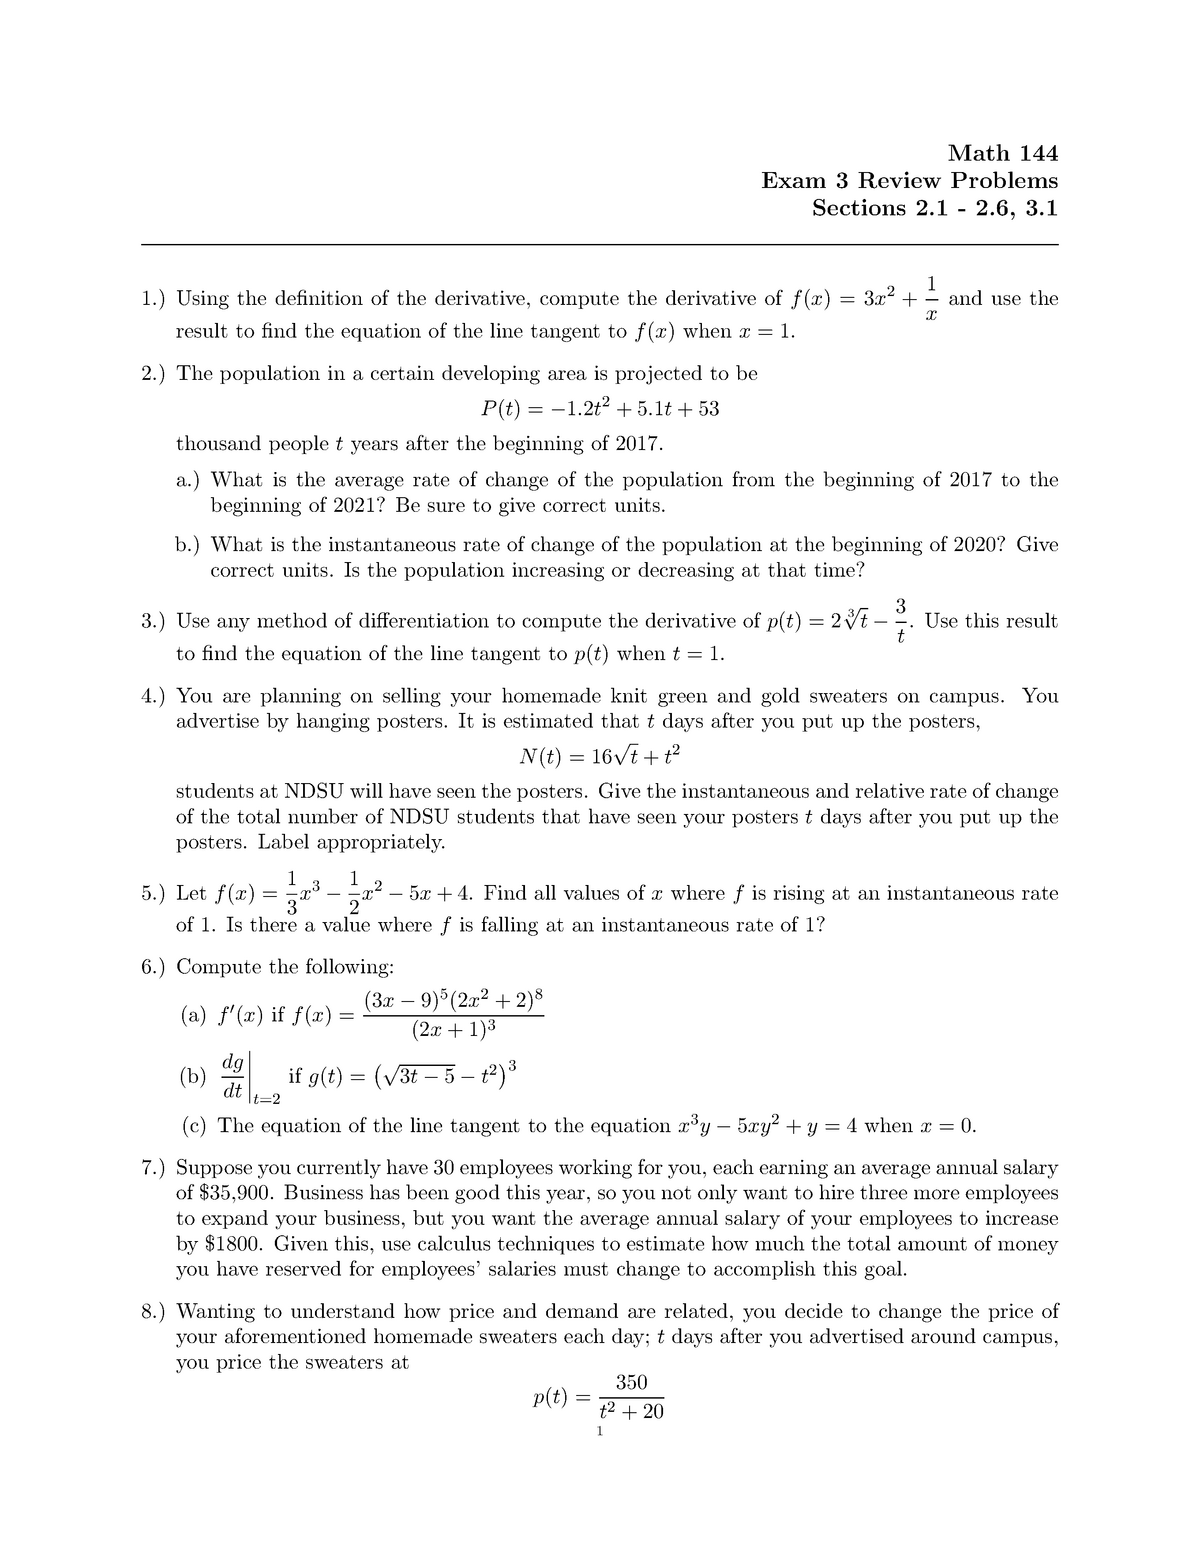 M144 Exam 3 Review Problems Studocu